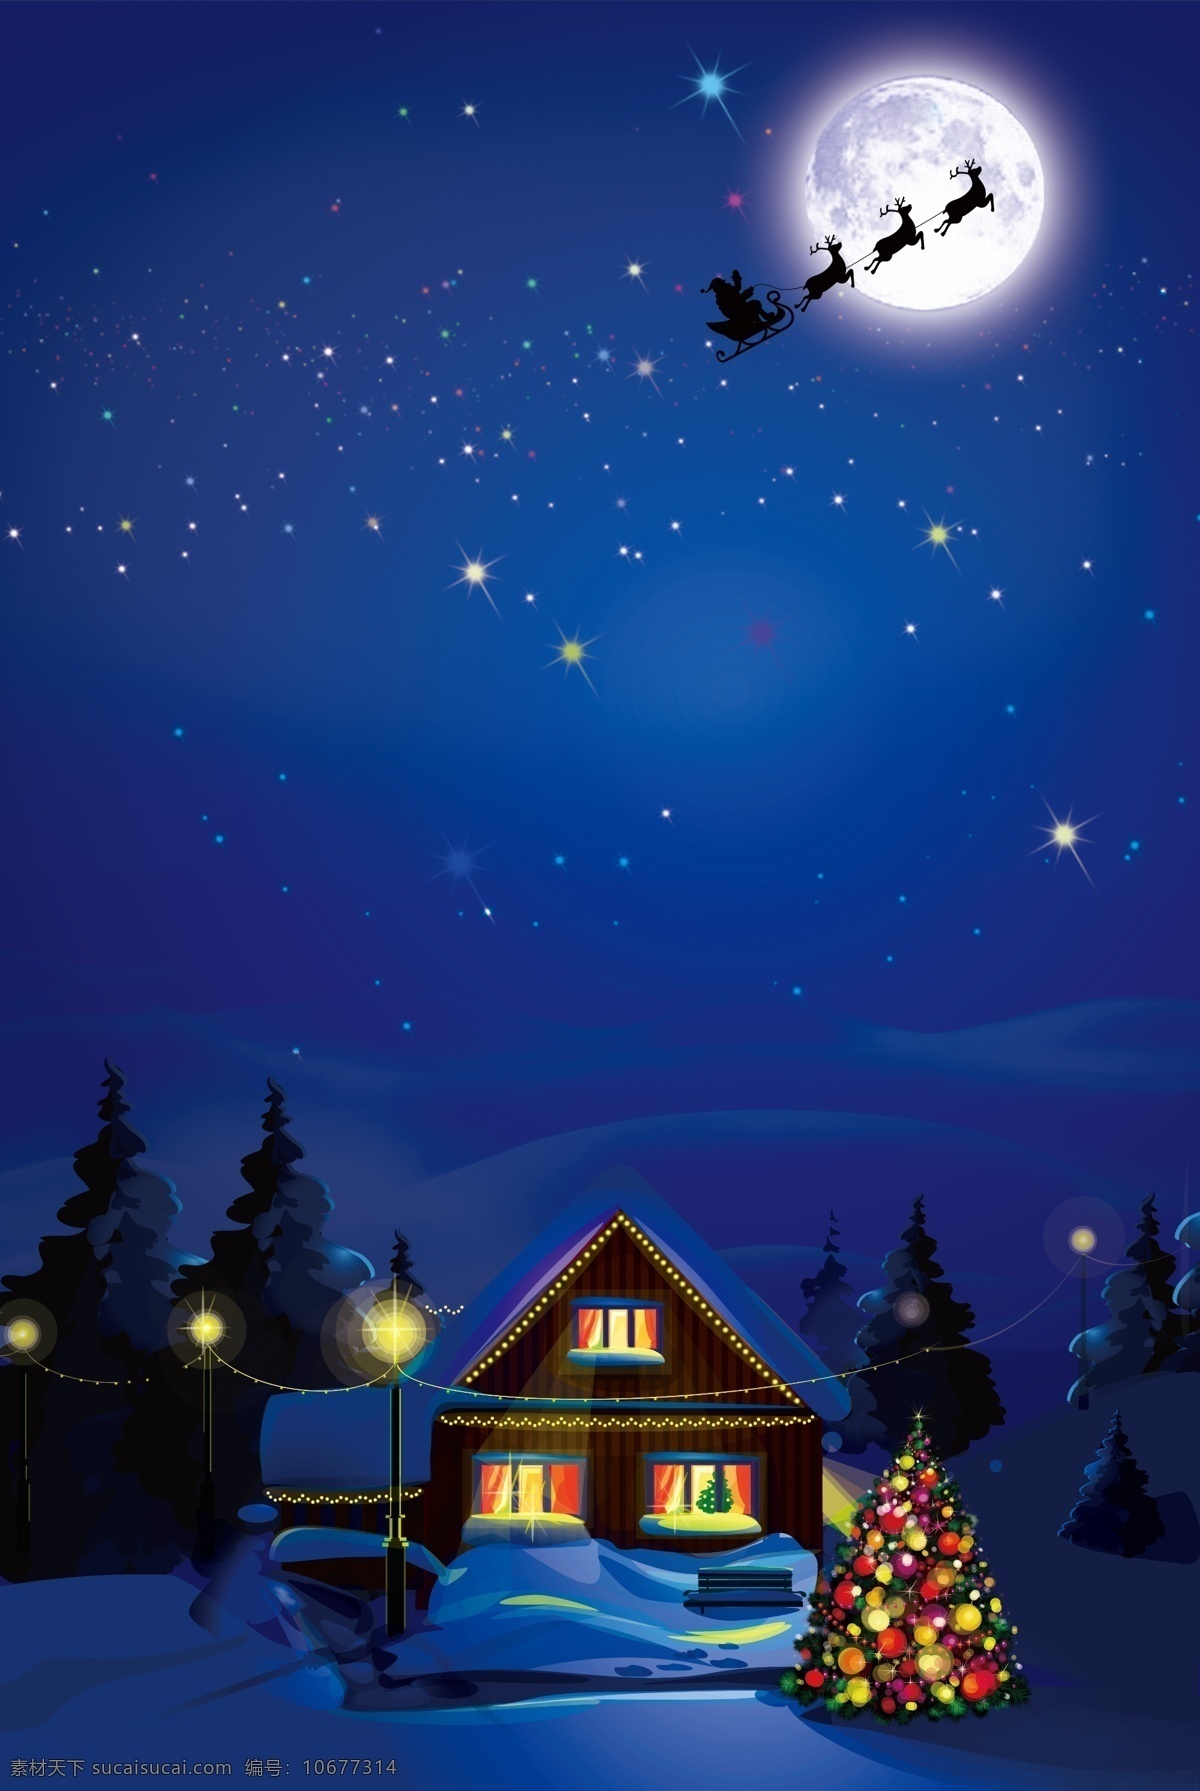 圣诞节 夜 海报 背景 蓝色 星空 圣诞树 圆月 圣诞屋 马车 雪圣诞节海报 圣诞雪花 圣诞晚会 圣诞主题 创意圣诞背景